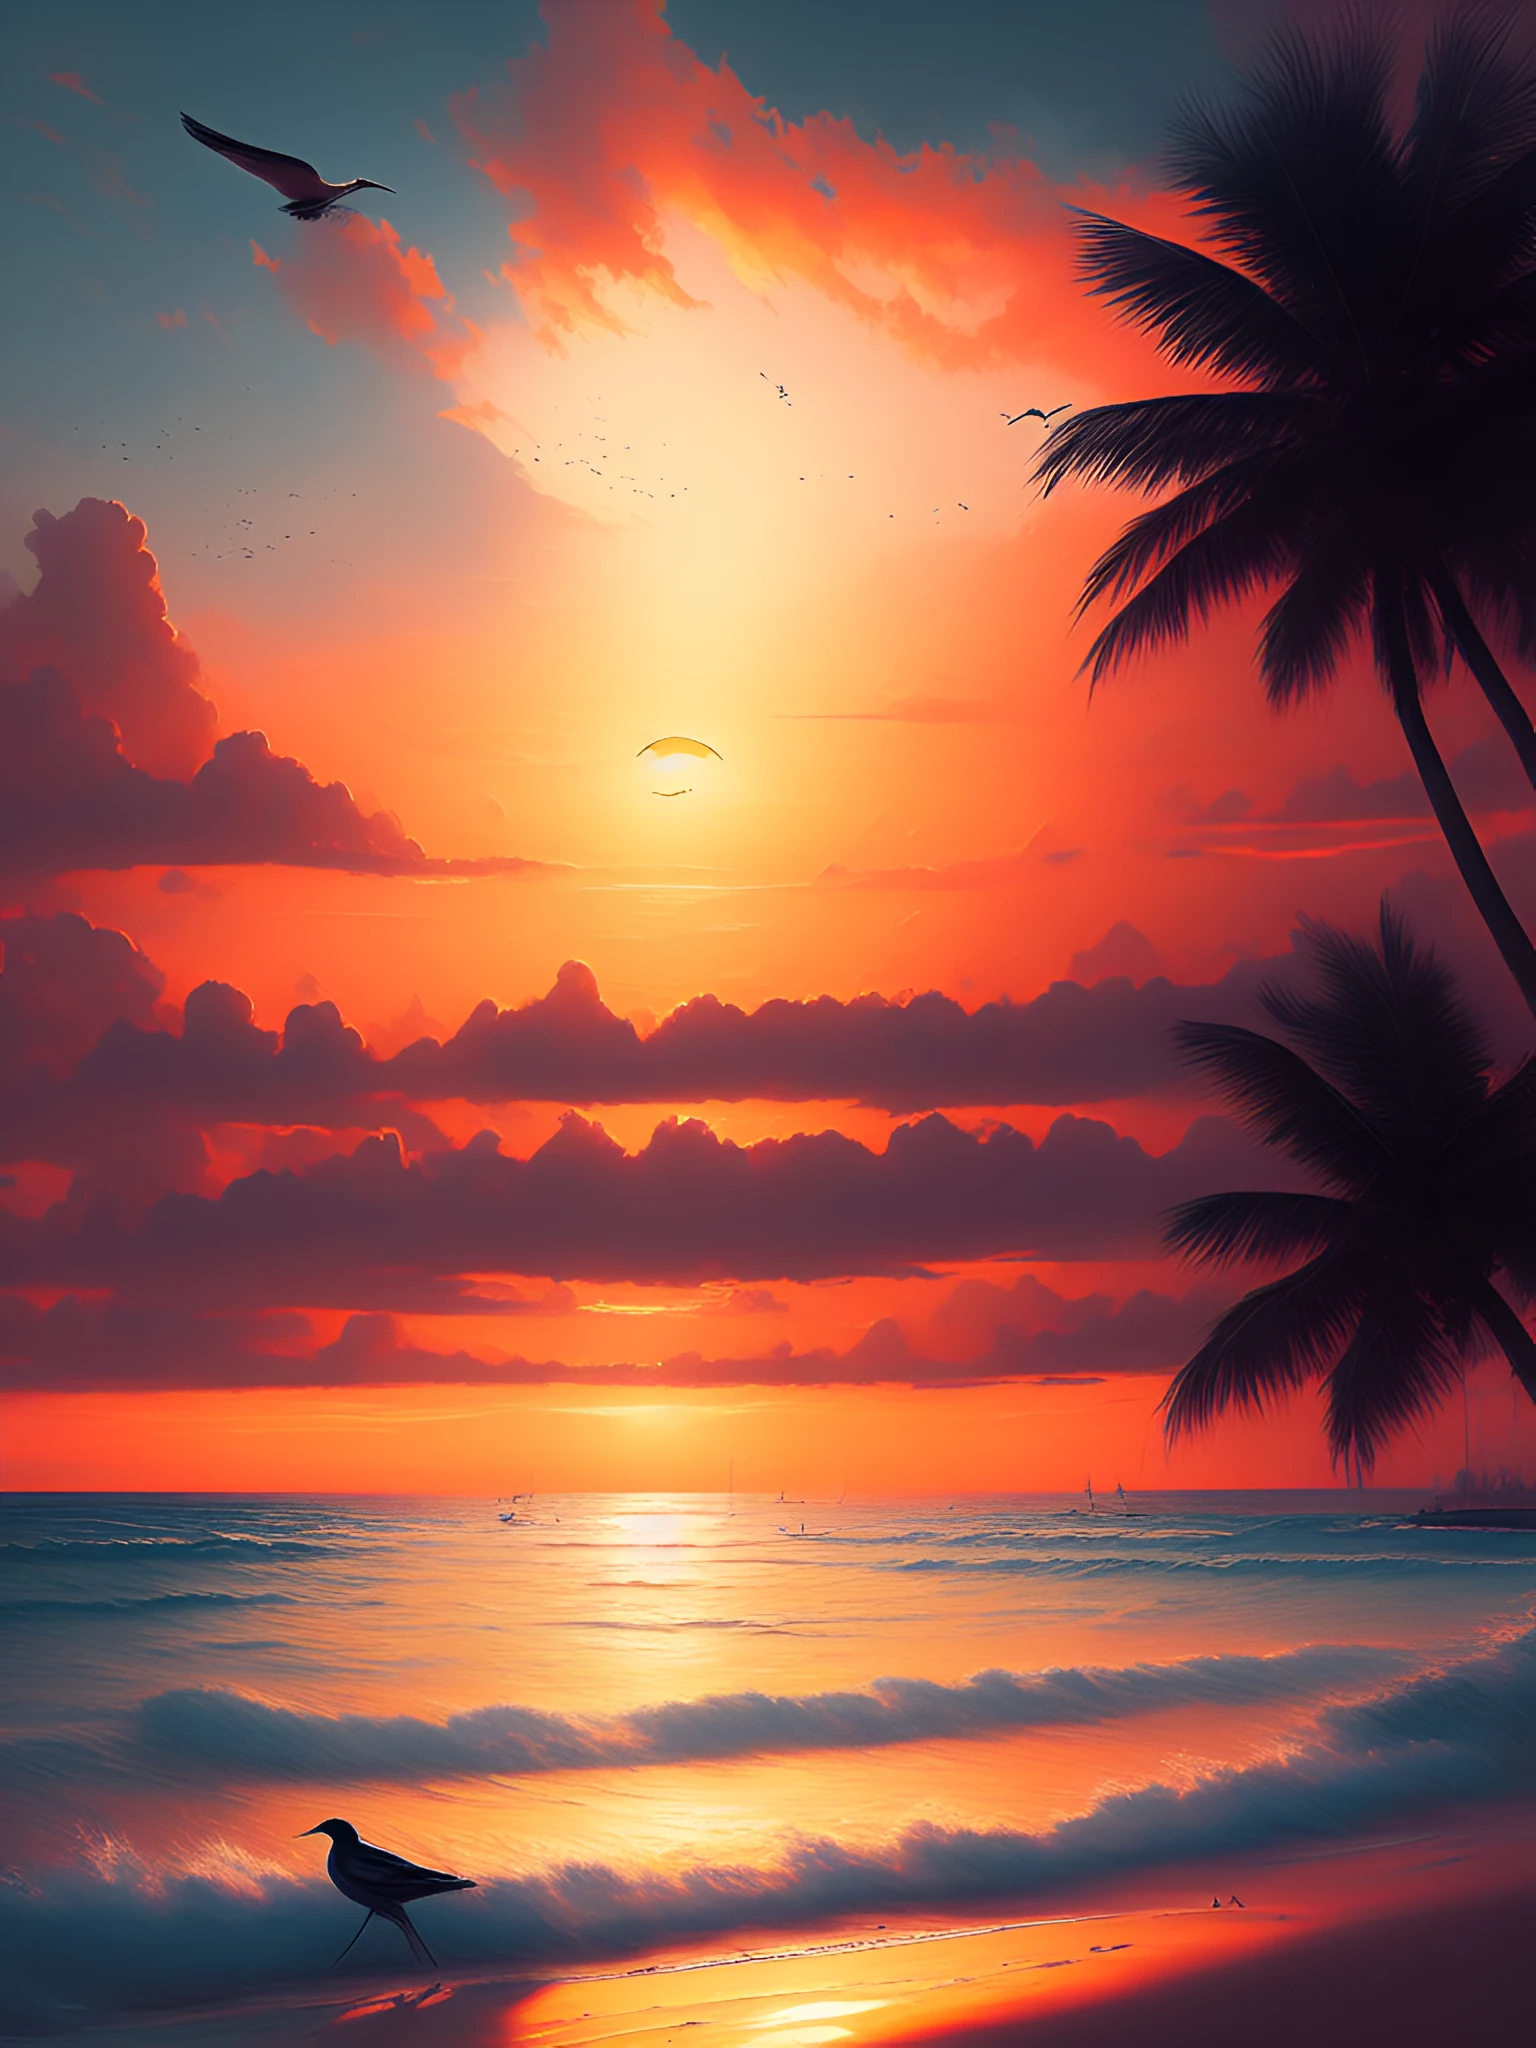 dreamlikeart ภาพวาดของชายหาดพระอาทิตย์ตกสวรรค์ที่สวยงาม, พระอาทิตย์อยู่ตรงกลาง, นกที่ห่างไกลบินอยู่บนขอบฟ้า, กำลังมาแรงบน artstation ในสไตล์ของ Greg Rutkowski